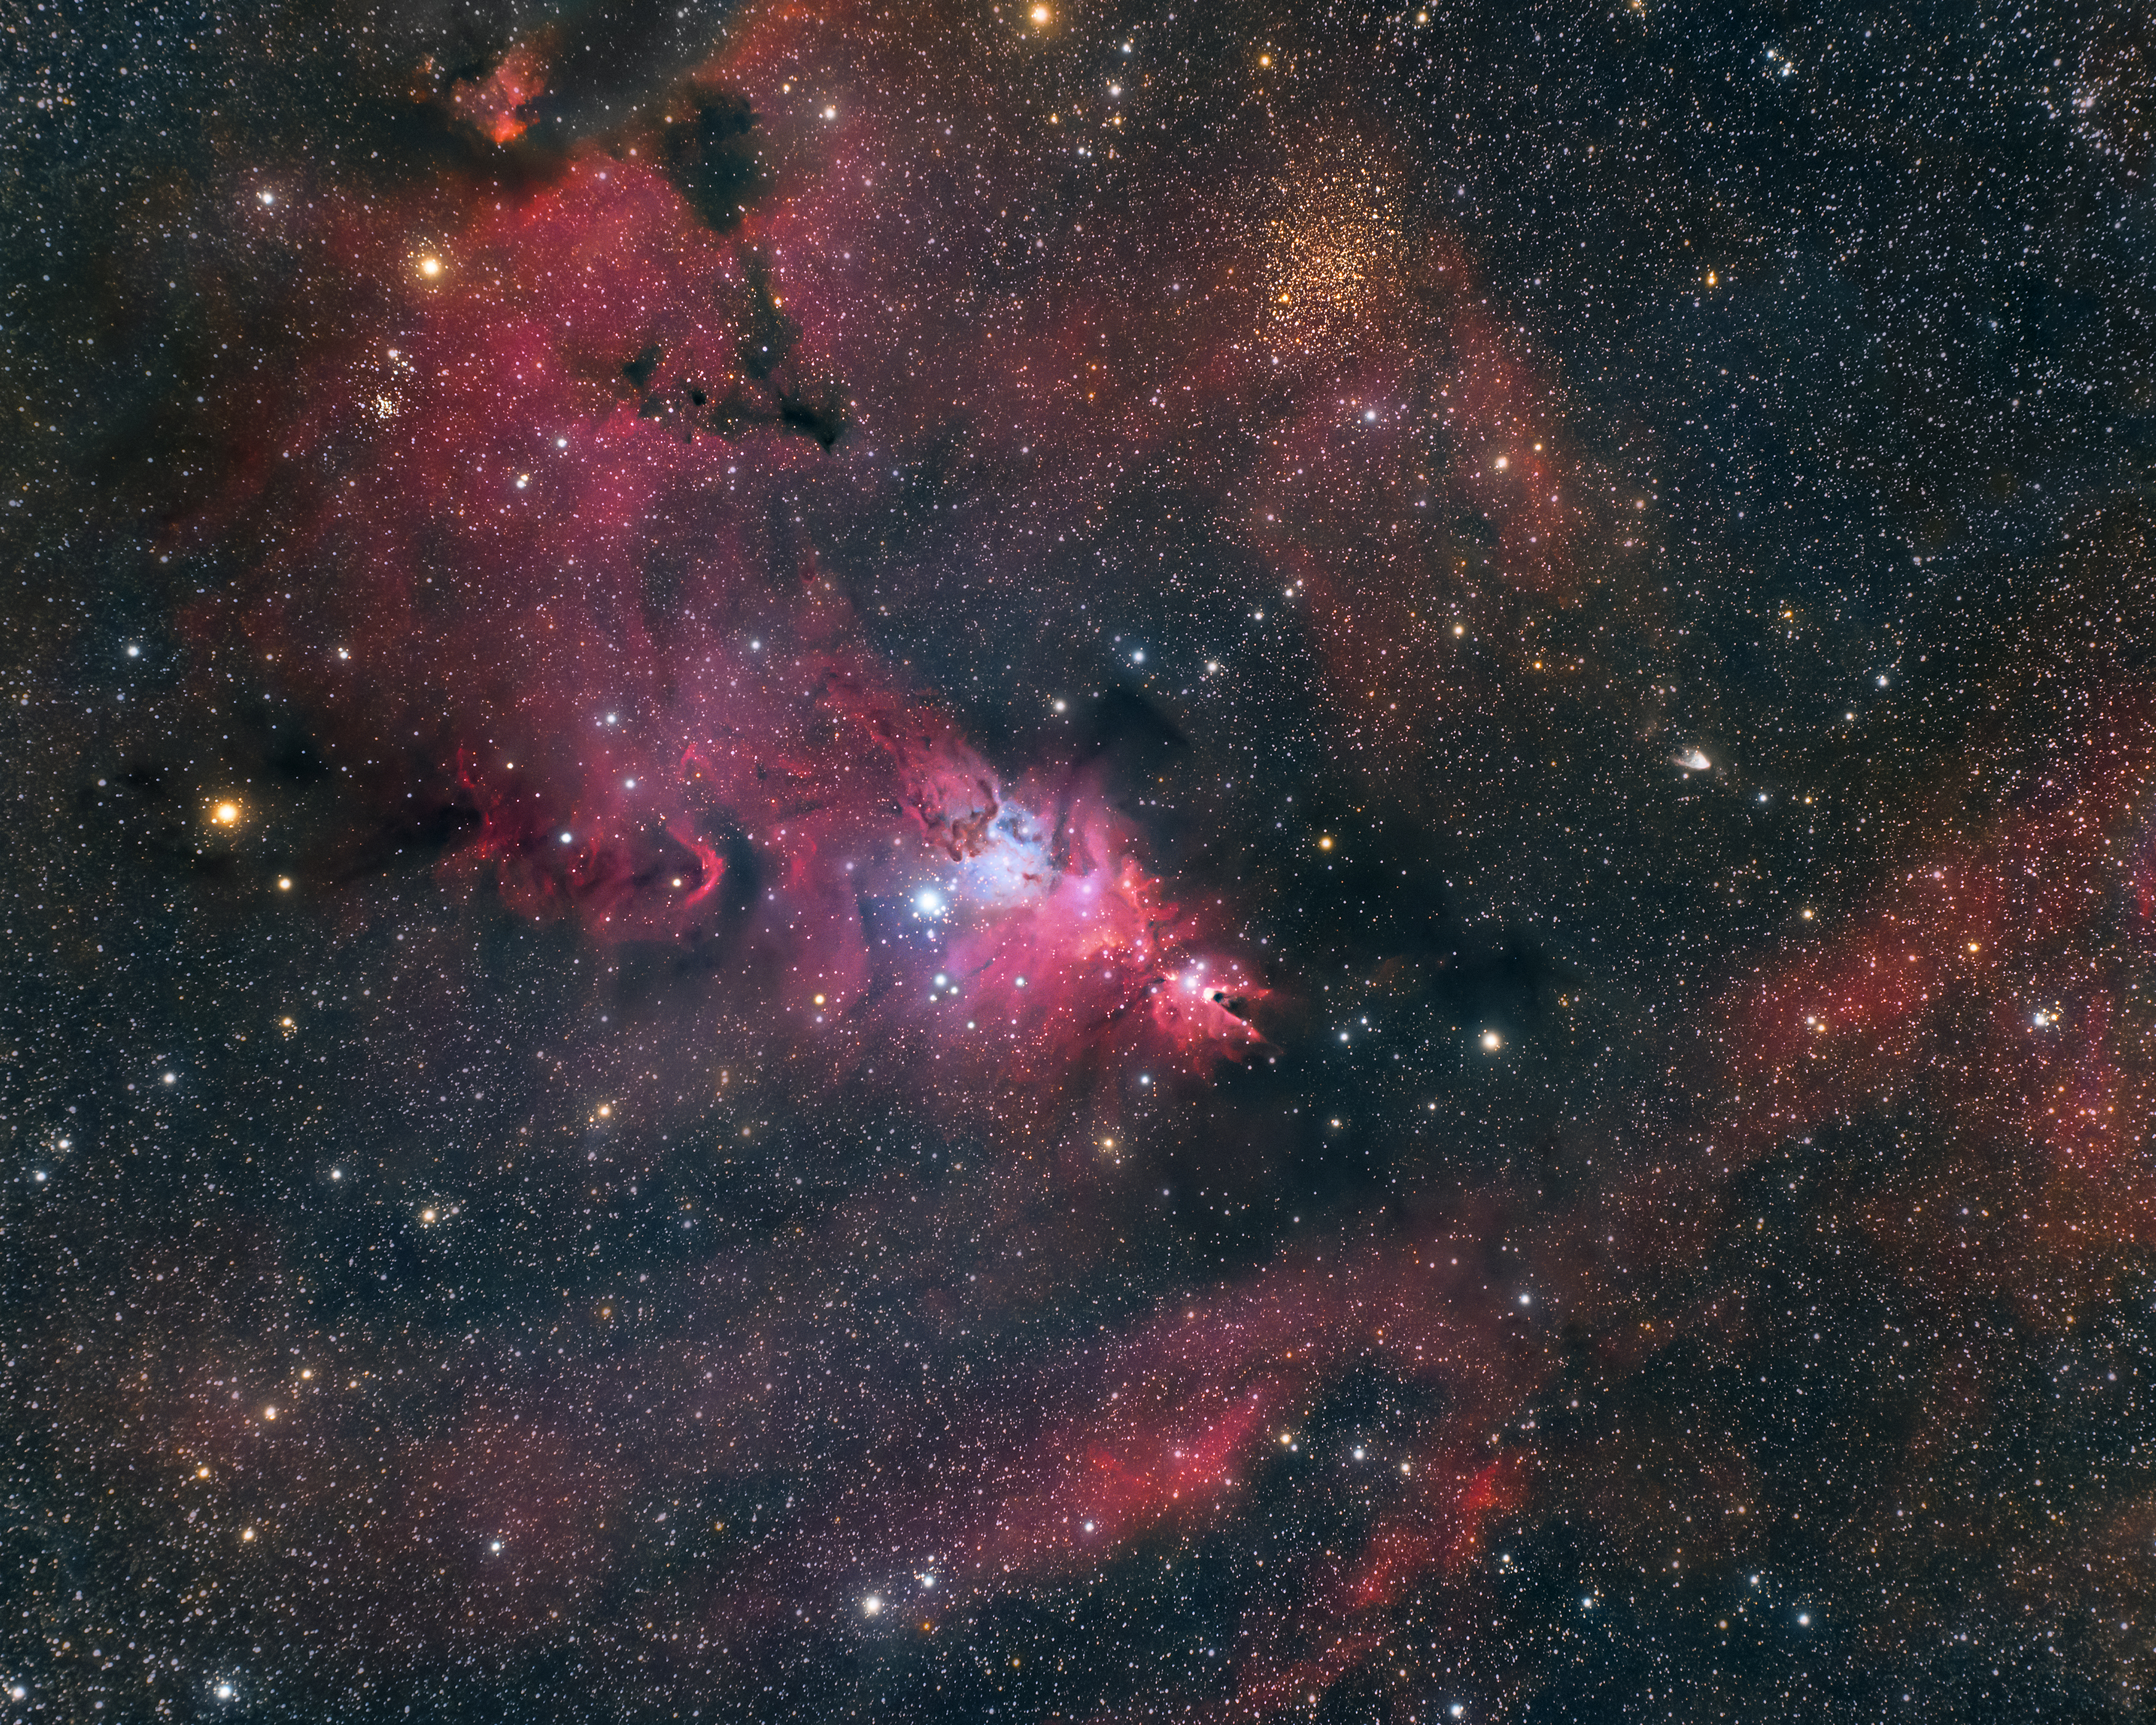 綺麗な銀河 星雲 685 いっかくじゅう座 Monoceros にある散光星雲 クリスマスツリー星団 星雲 Fox Fur Nebula そしてhii領域 コーン星雲 再々々改訂 我家のｉｔ化